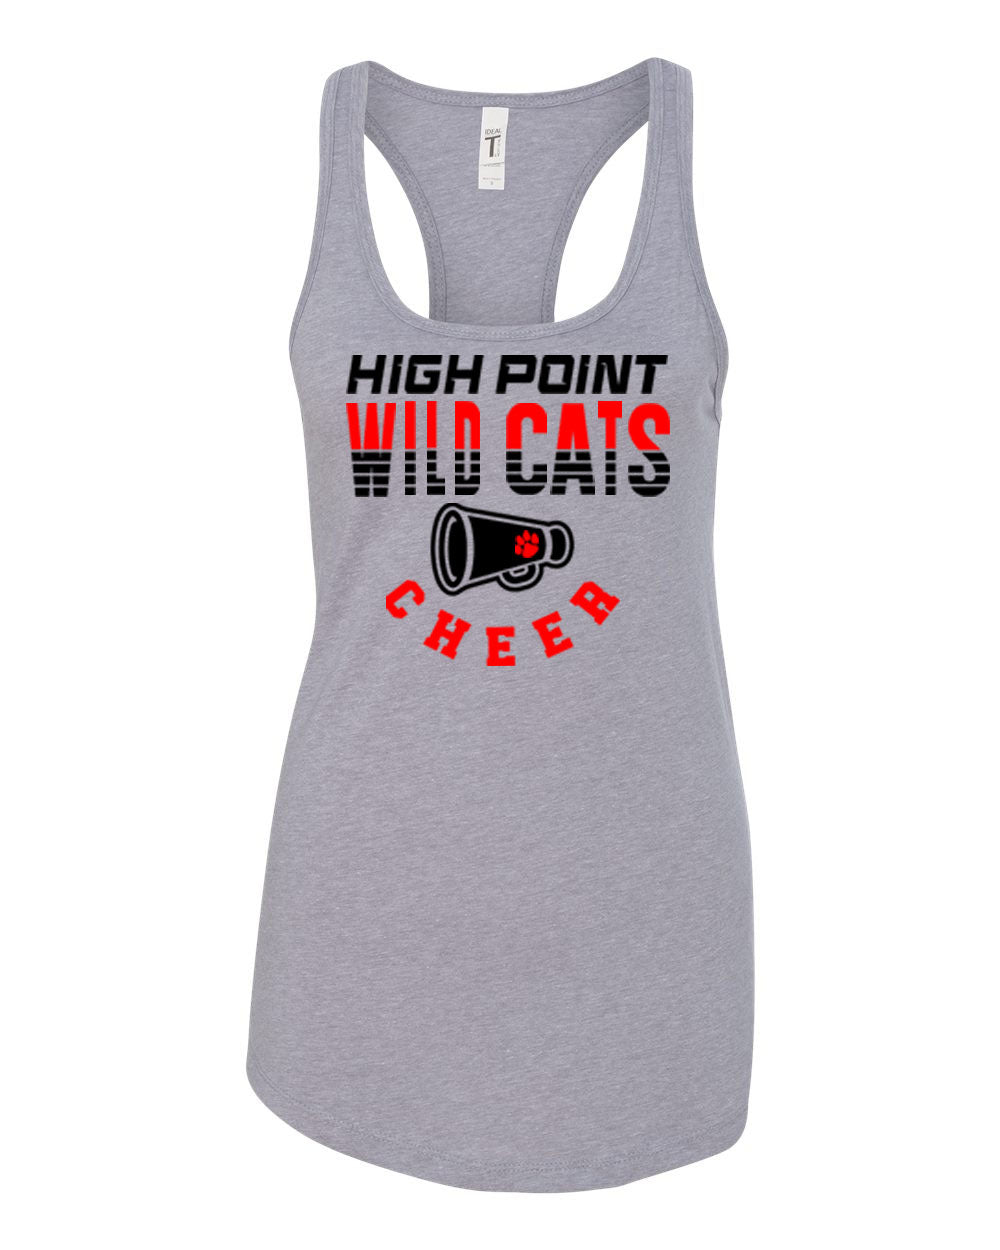 Wildcats Cheer Design 2 Tank Top